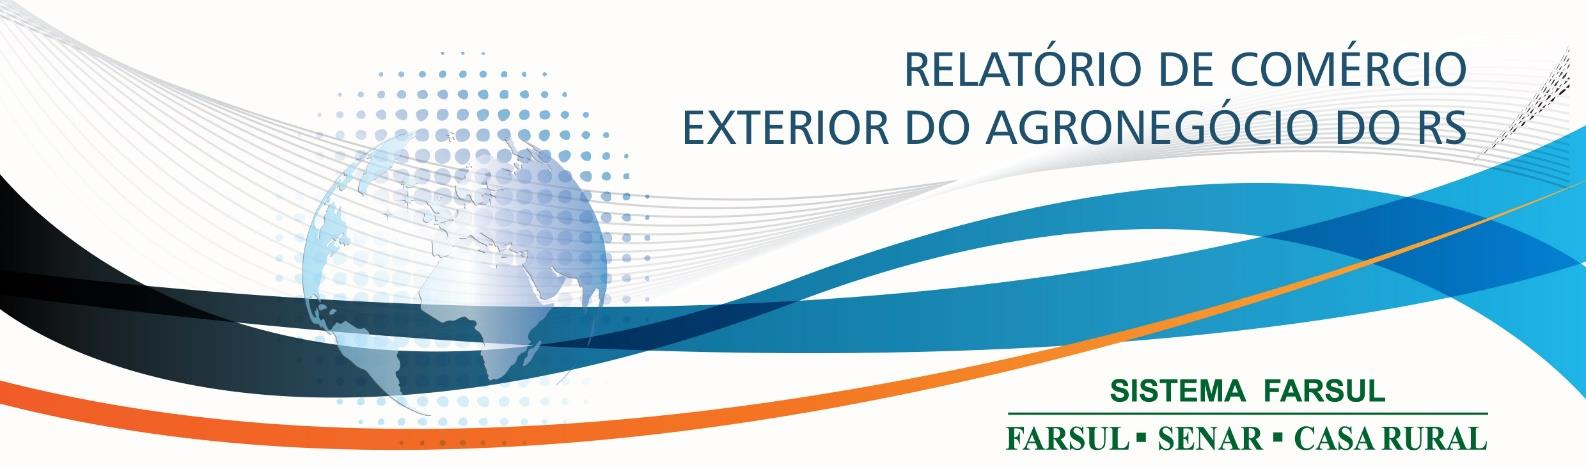 Este relatório tem por objetivo apresentar os principais números referentes ao comércio exterior do agronegócio do Rio Grande do Sul no mês de fevereiro de 2016.